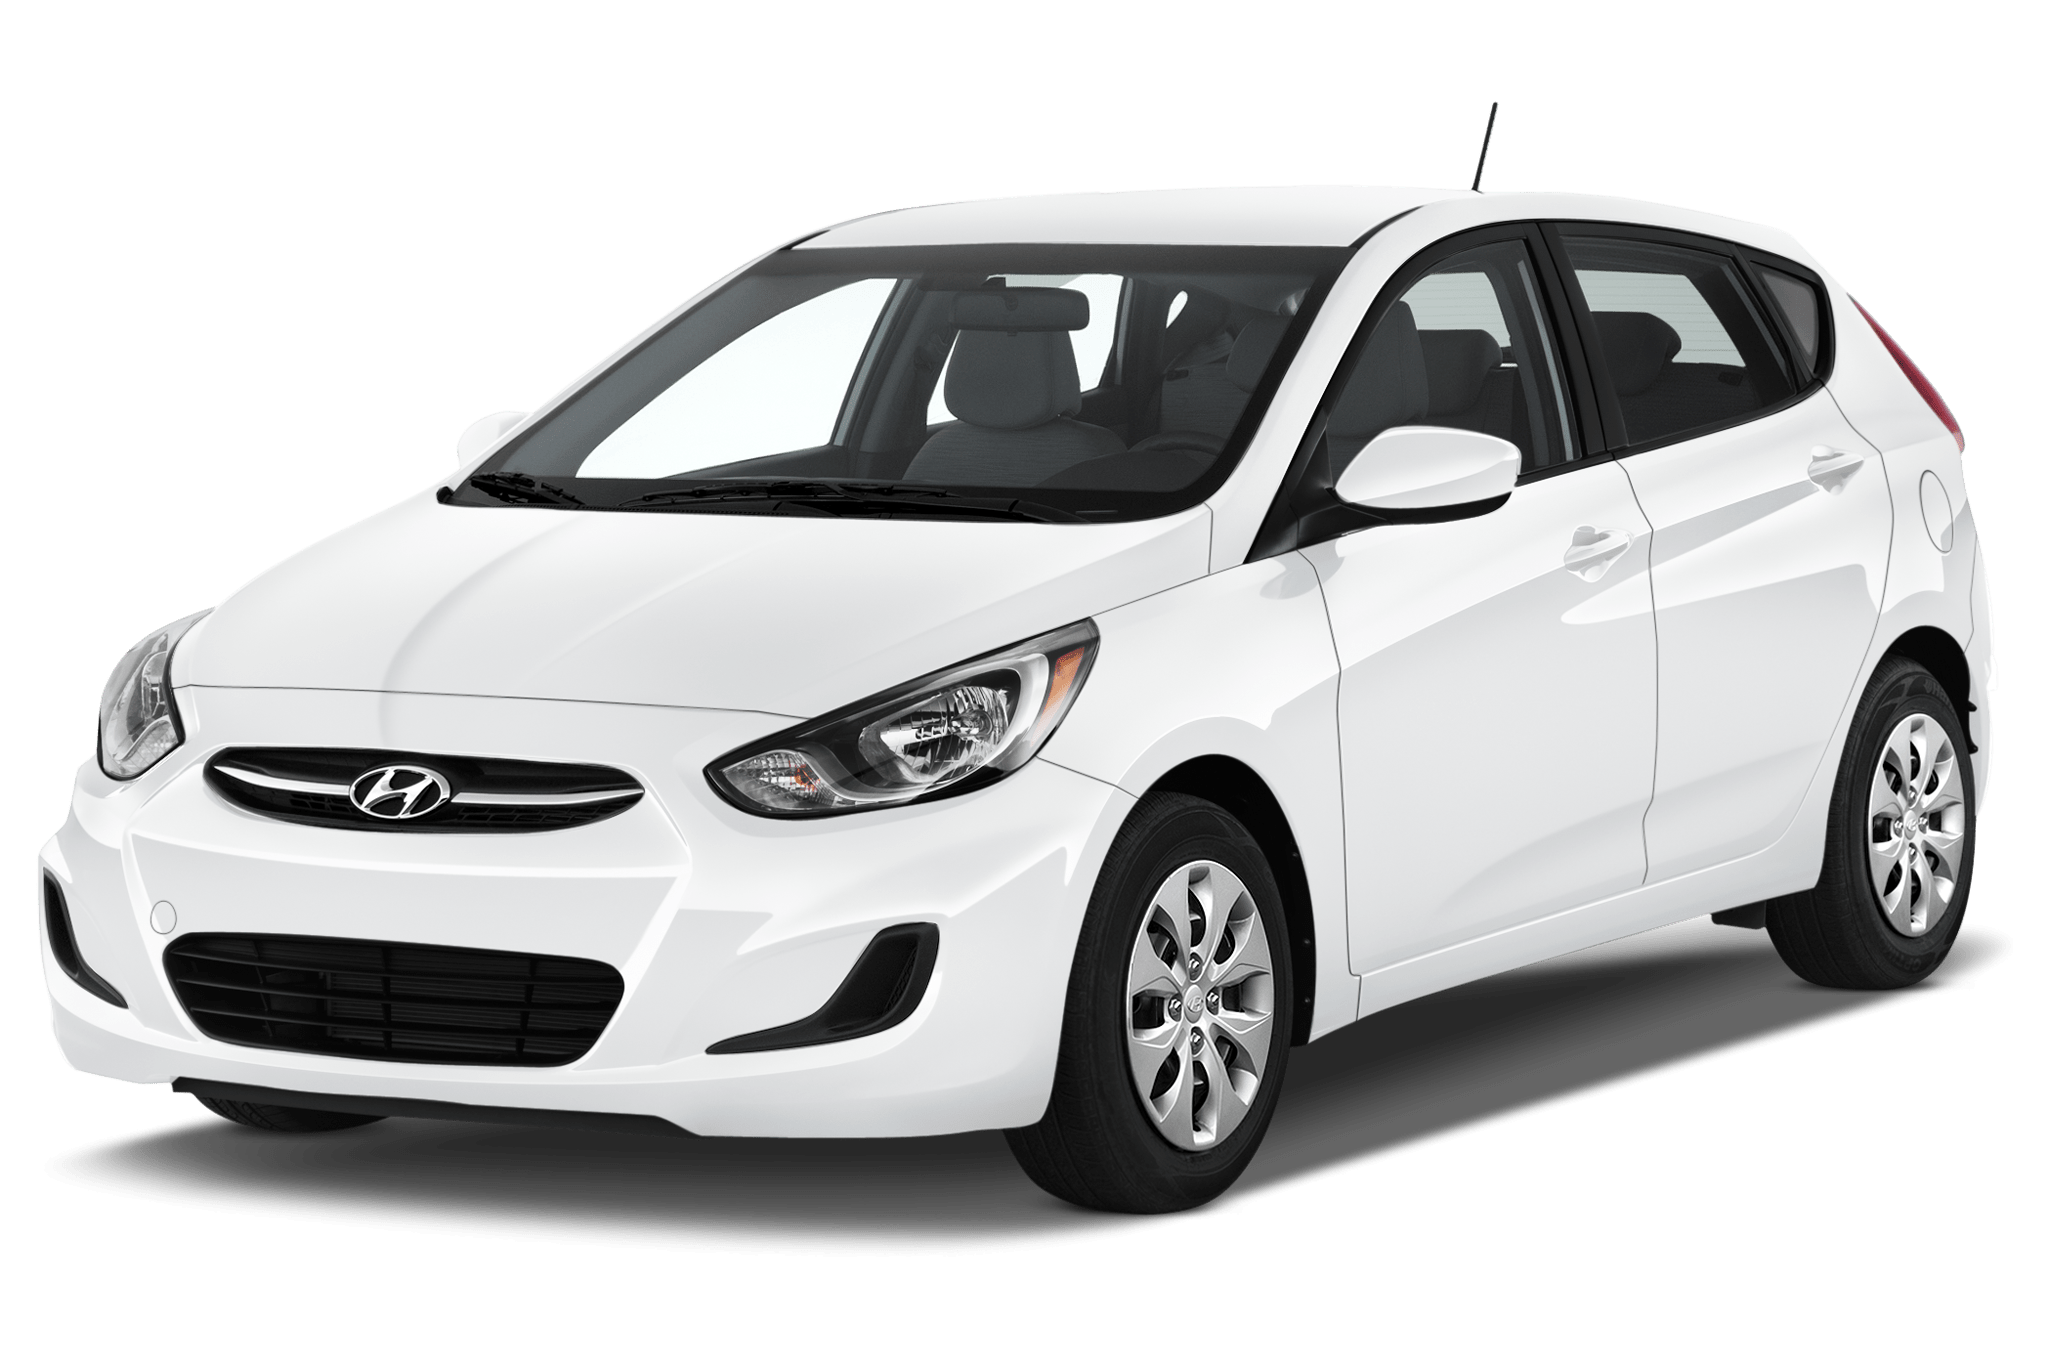 Trong tiếng Hàn, Hyundai có nghĩa là "hiện đại"